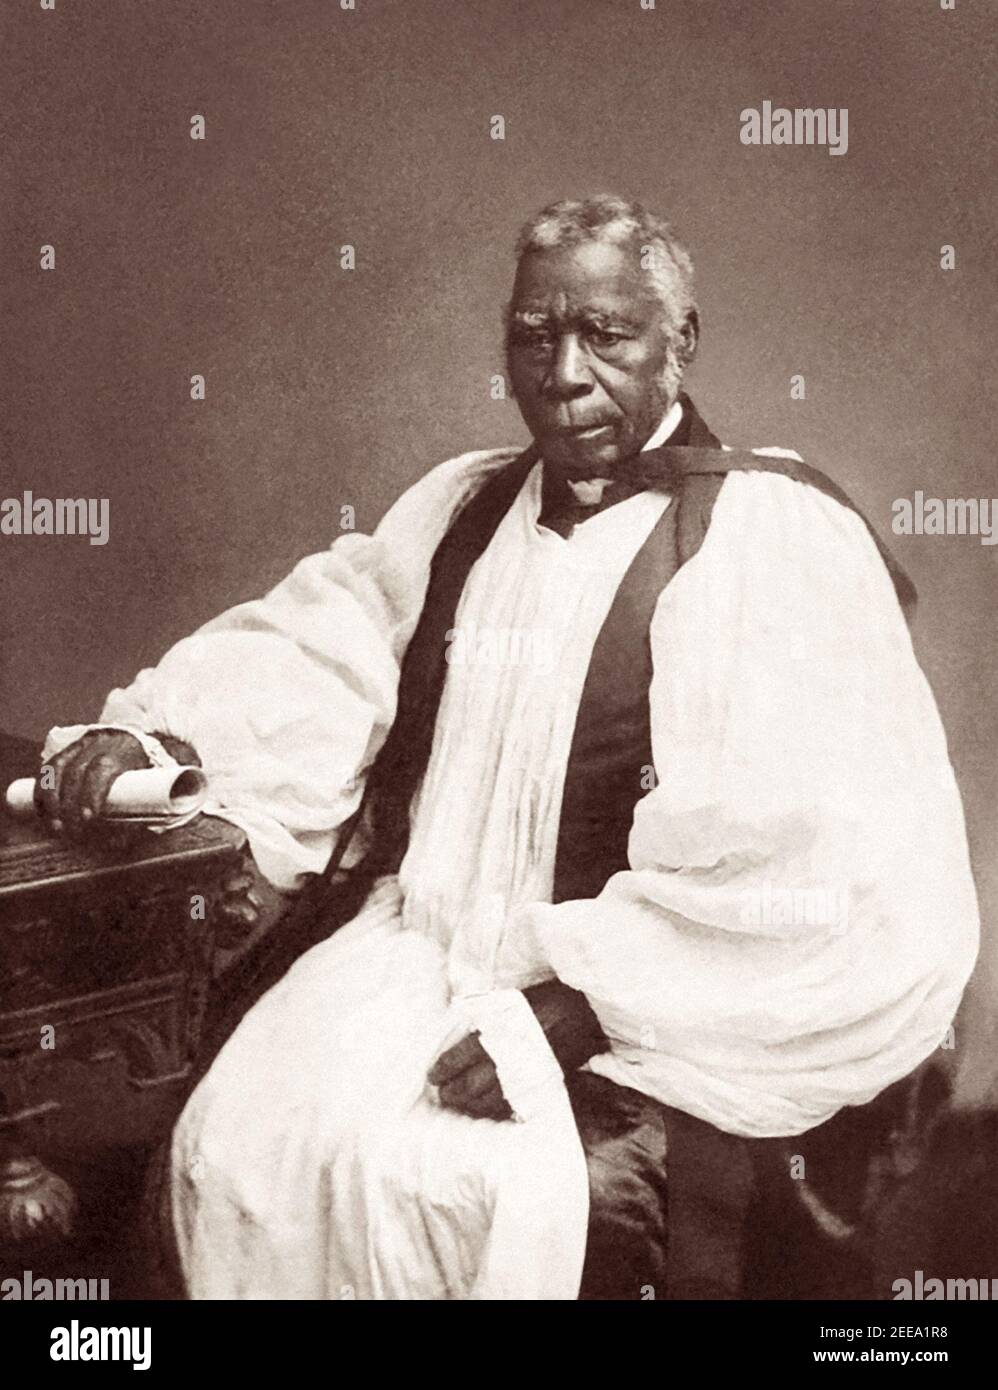 Samuel Ajayi Crowther (c1809–1891), ancien esclave devenu le premier évêque anglican noir. Crowther a été ordonné par la Société missionnaire de l'Église et, en 1864, a été consacré évêque du territoire du Niger en Afrique. Linguiste, titulaire d'un doctorat honorifique en divinité de l'Université d'Oxford, M. Crowther a travaillé à la traduction de la Bible dans plus d'une langue africaine. Banque D'Images